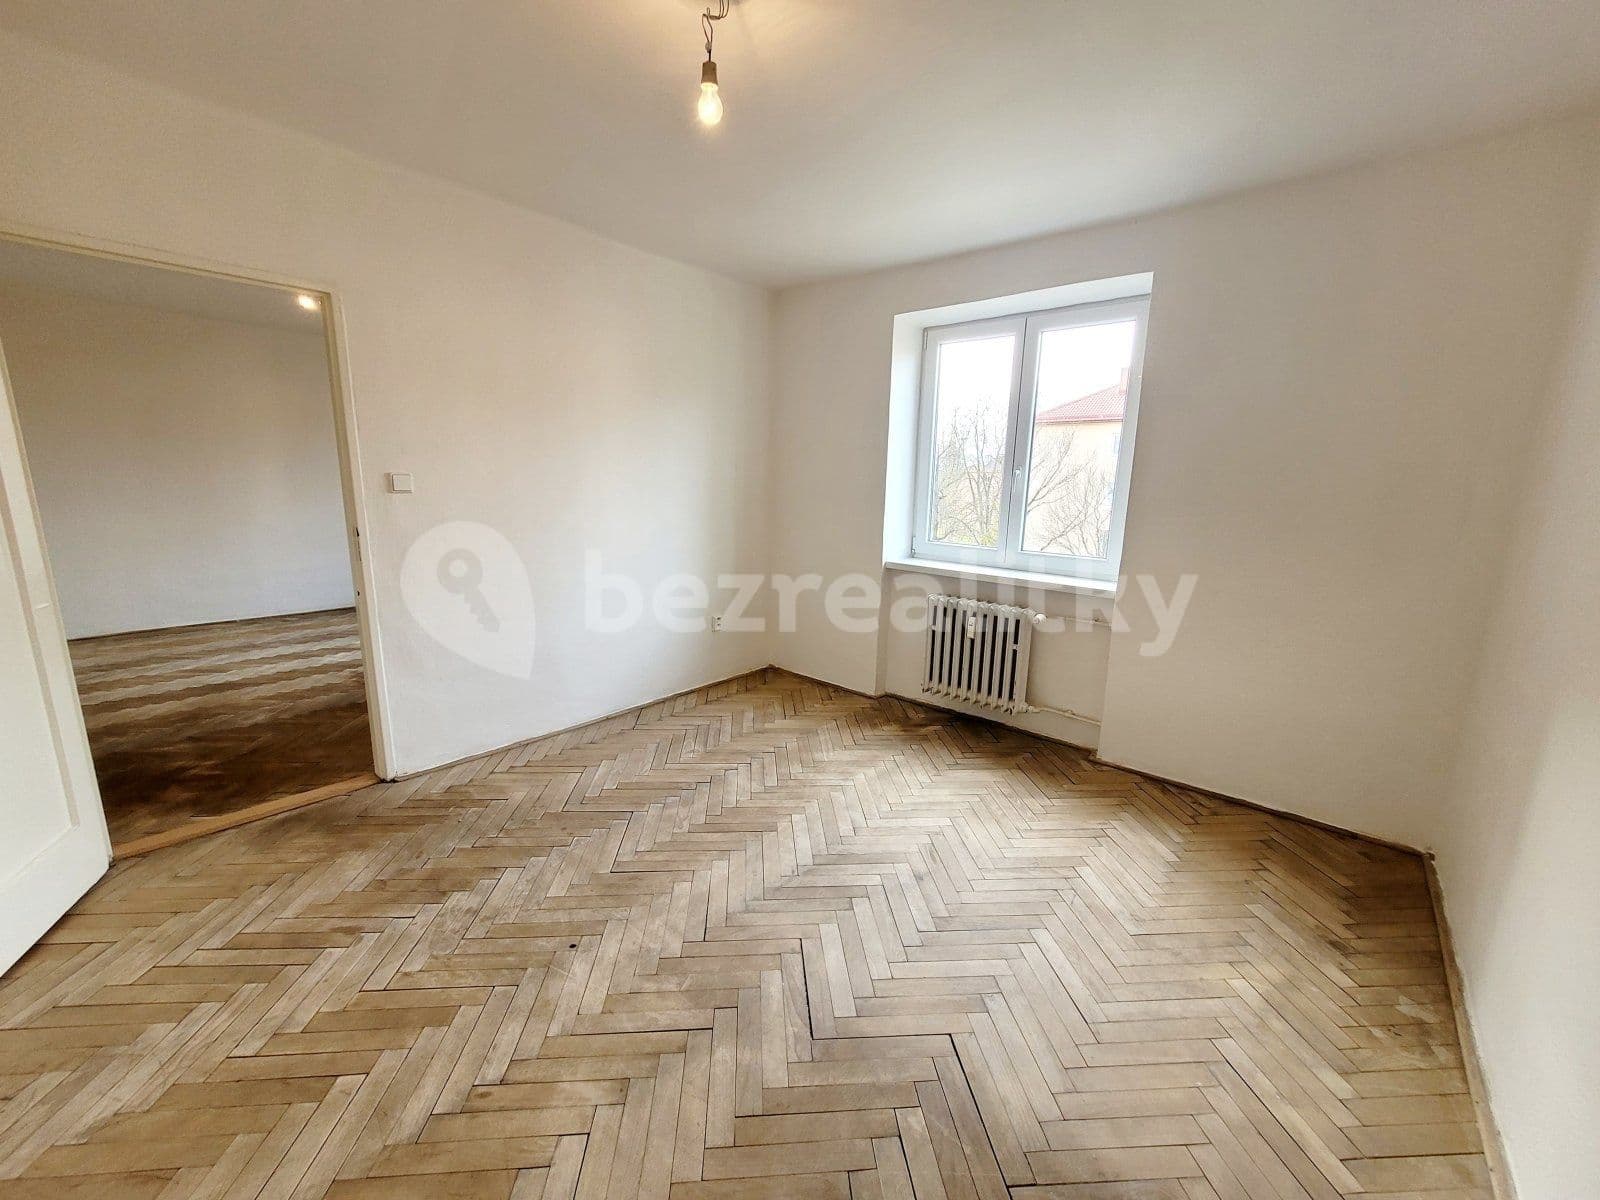 2 bedroom flat to rent, 55 m², Anglická, Havířov, Moravskoslezský Region